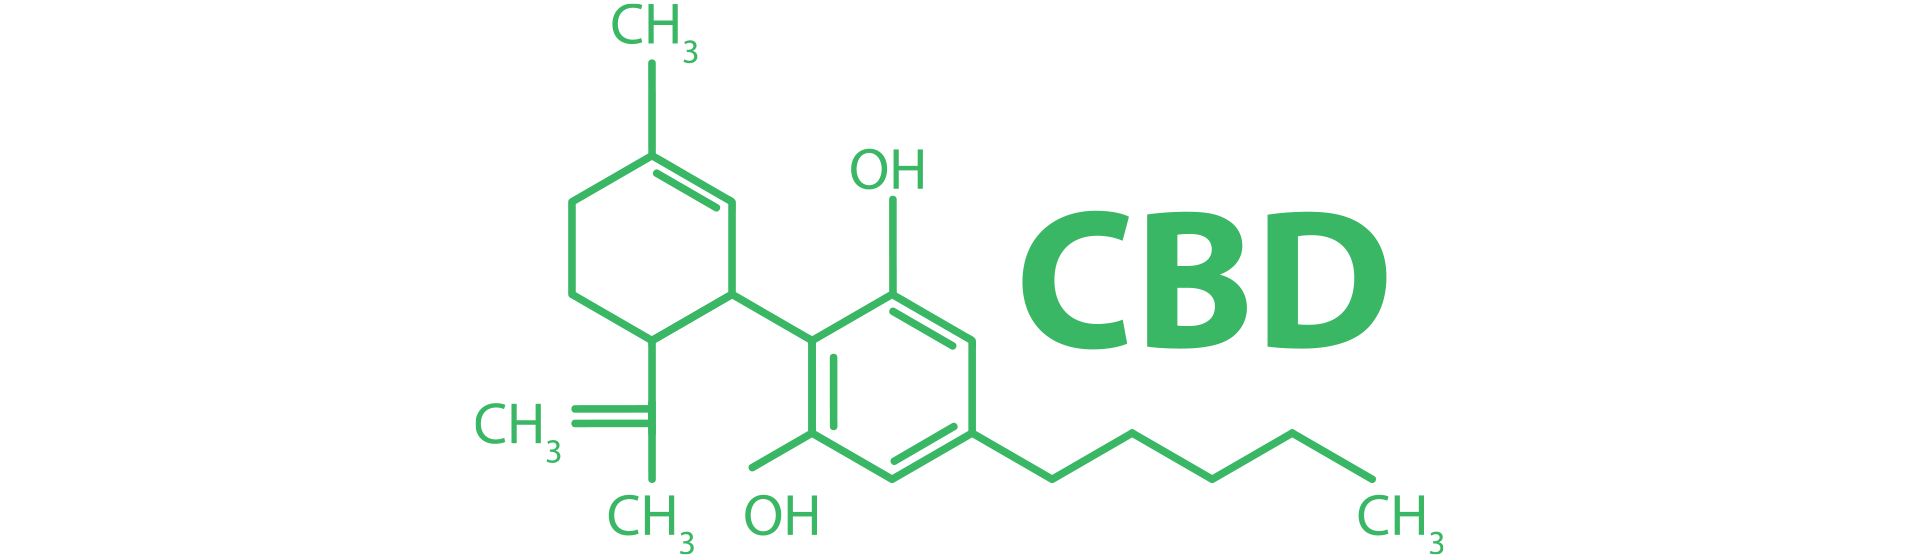 Formule chimique-CBD